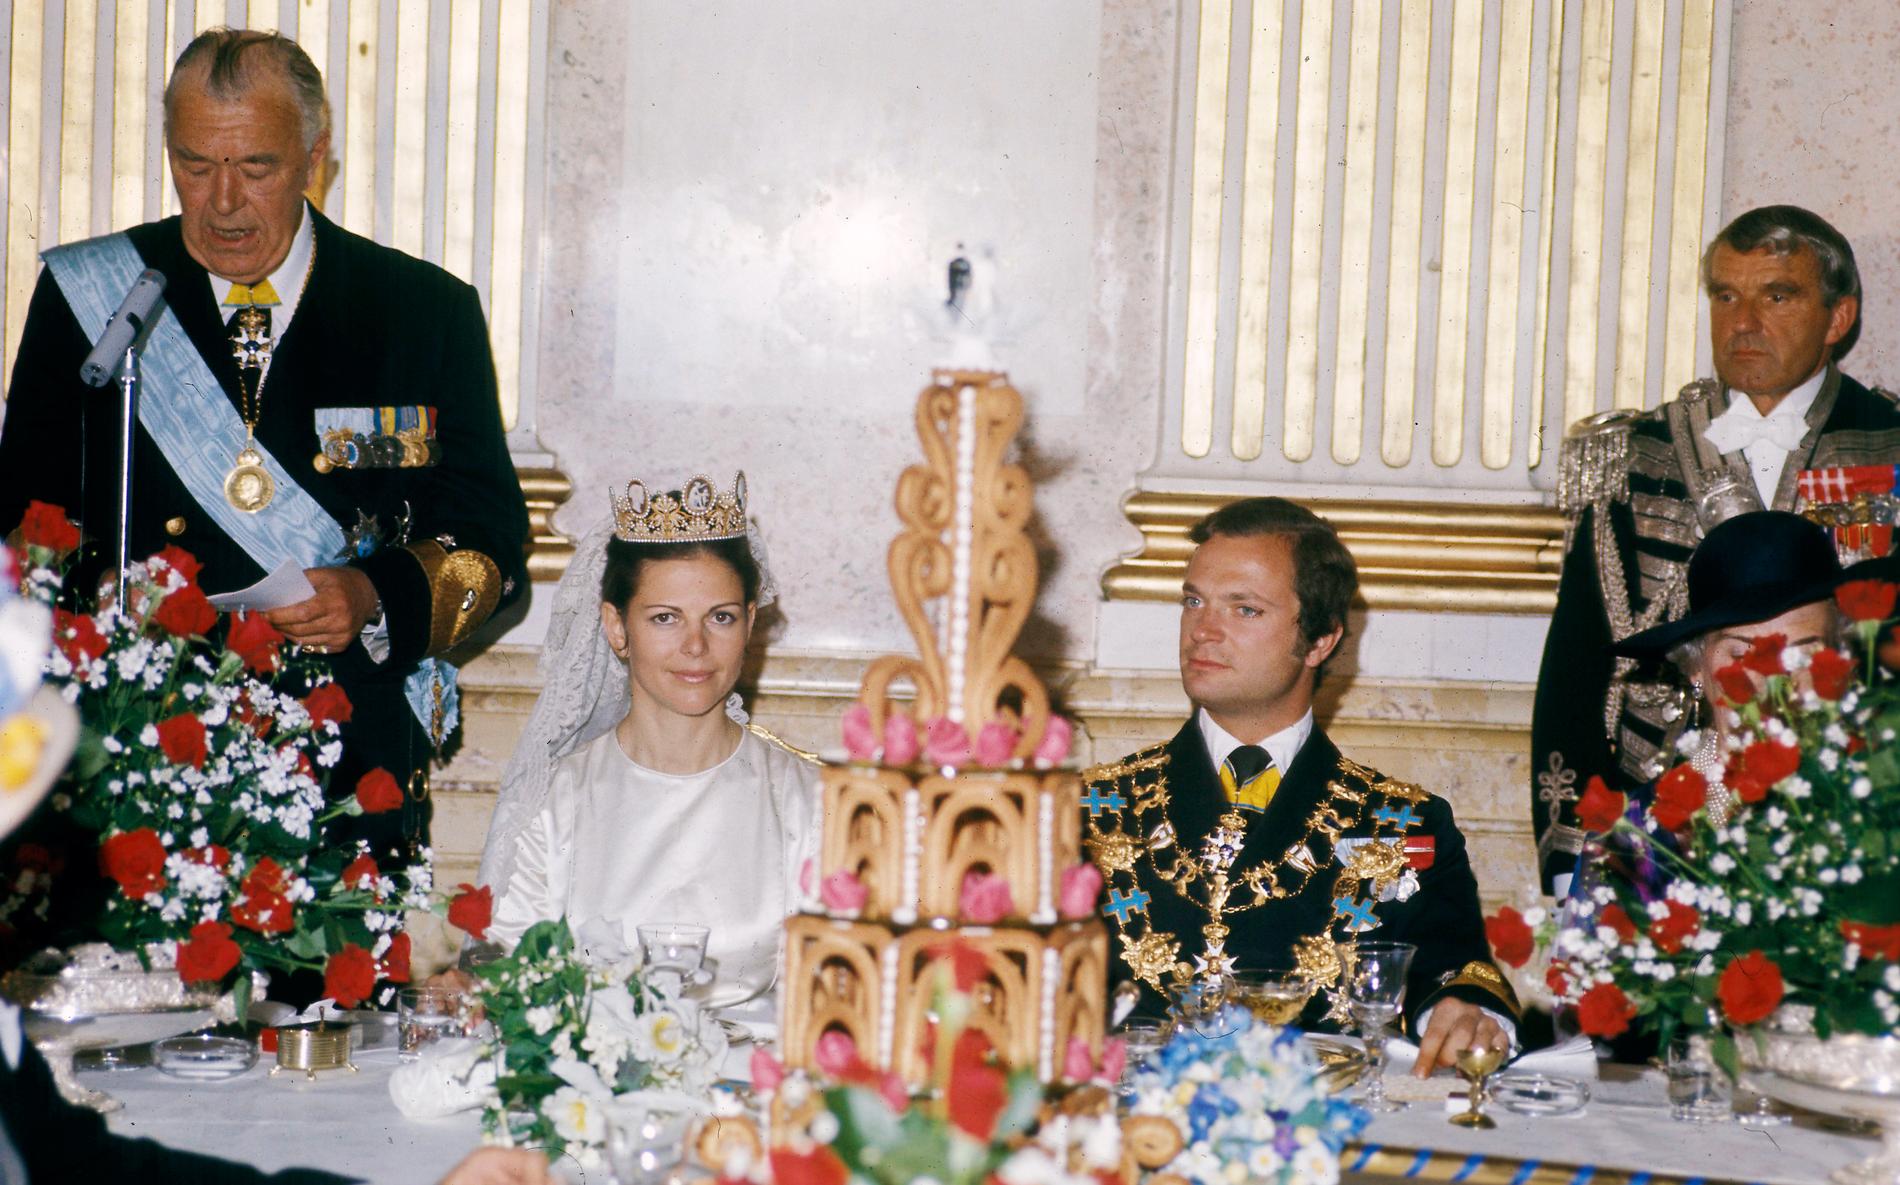 Kungens farbror prins Bertil och drottning Ingrid av Danmark var värdar för bröllopslunchen som hölls i Vita havet på kungliga slottet. 400 gäster var inbjudna och på bordet stod stora bröllopskrokaner, dekorerade med rosa marsipanrosor. Borden var dukade med silver, vitt porslin med blå kant och gnistrande kristallglas. Prins Bertil prisade drottningen för hennes klokhet och älskliga egenskaper i sitt tal till paret. ”Säg mig den brudgum som på bröllopsdagen lyssnar till visdomsord från äldre generationer. Låt mig dock återge en enda tanke som i ett nötskal återspeglar något av konsten att leva tillsammans: Det behövs så lite utöver det nödvändiga för att hjärtan och dörrar ska öppnas...”